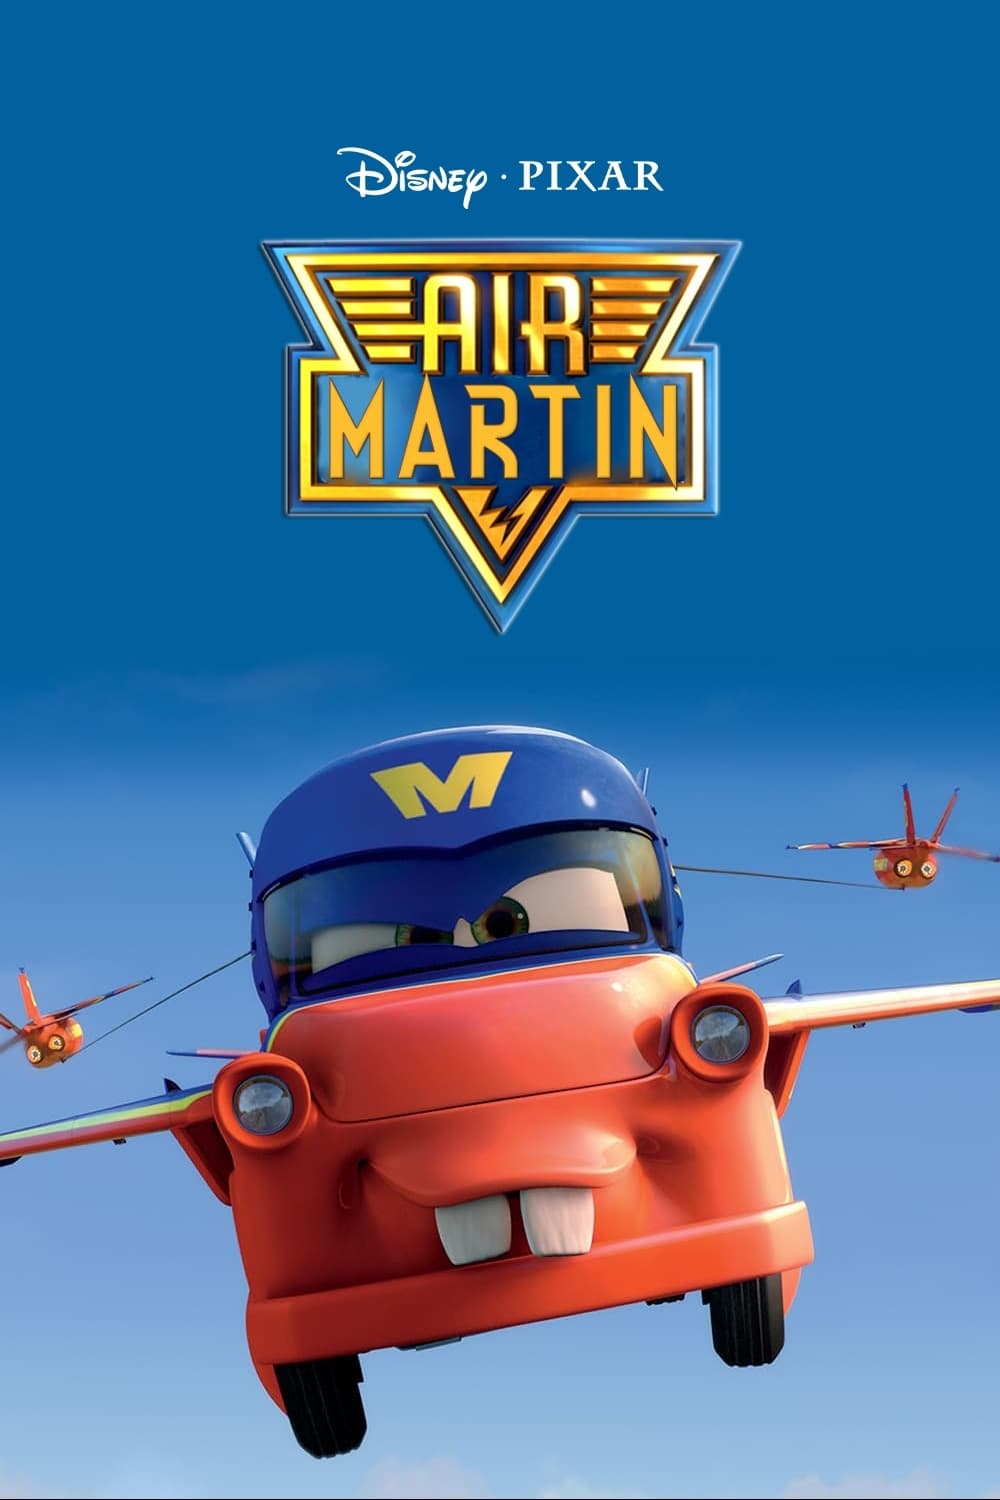 Air Martin